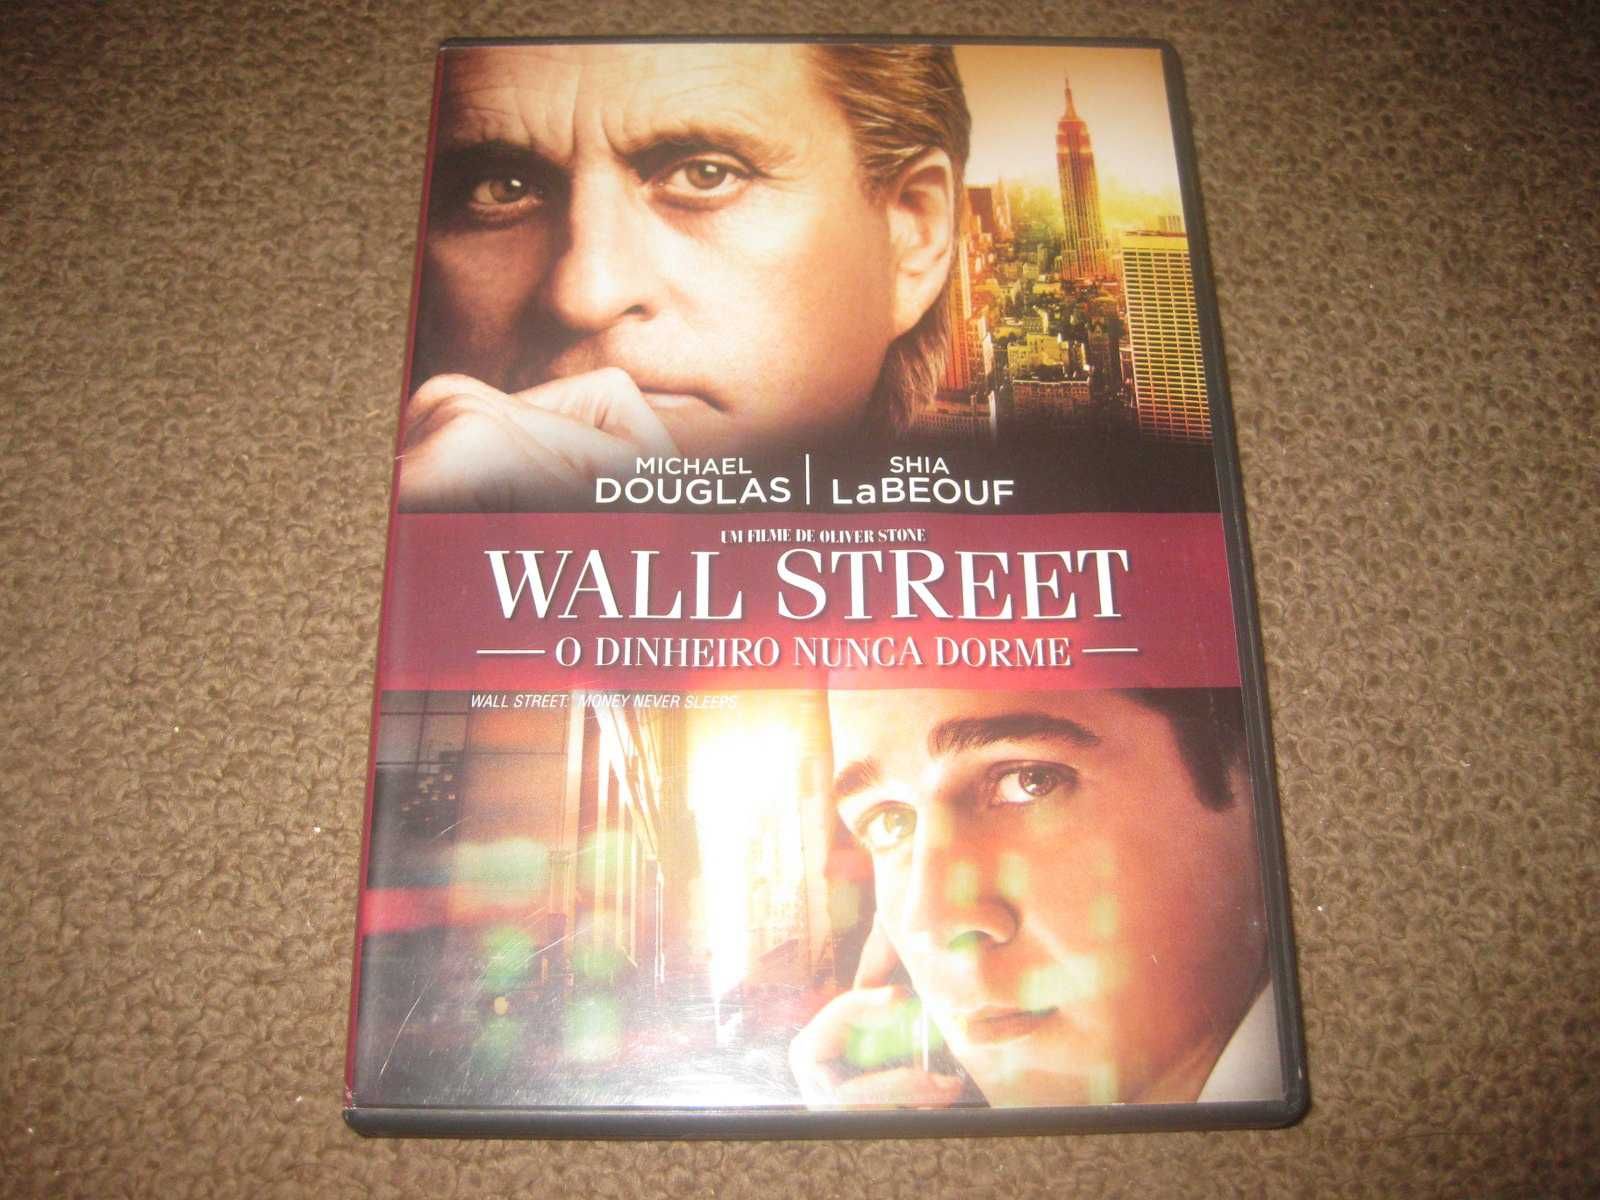 DVD "Wall Street: O Dinheiro Nunca Dorme" com Michael Douglas